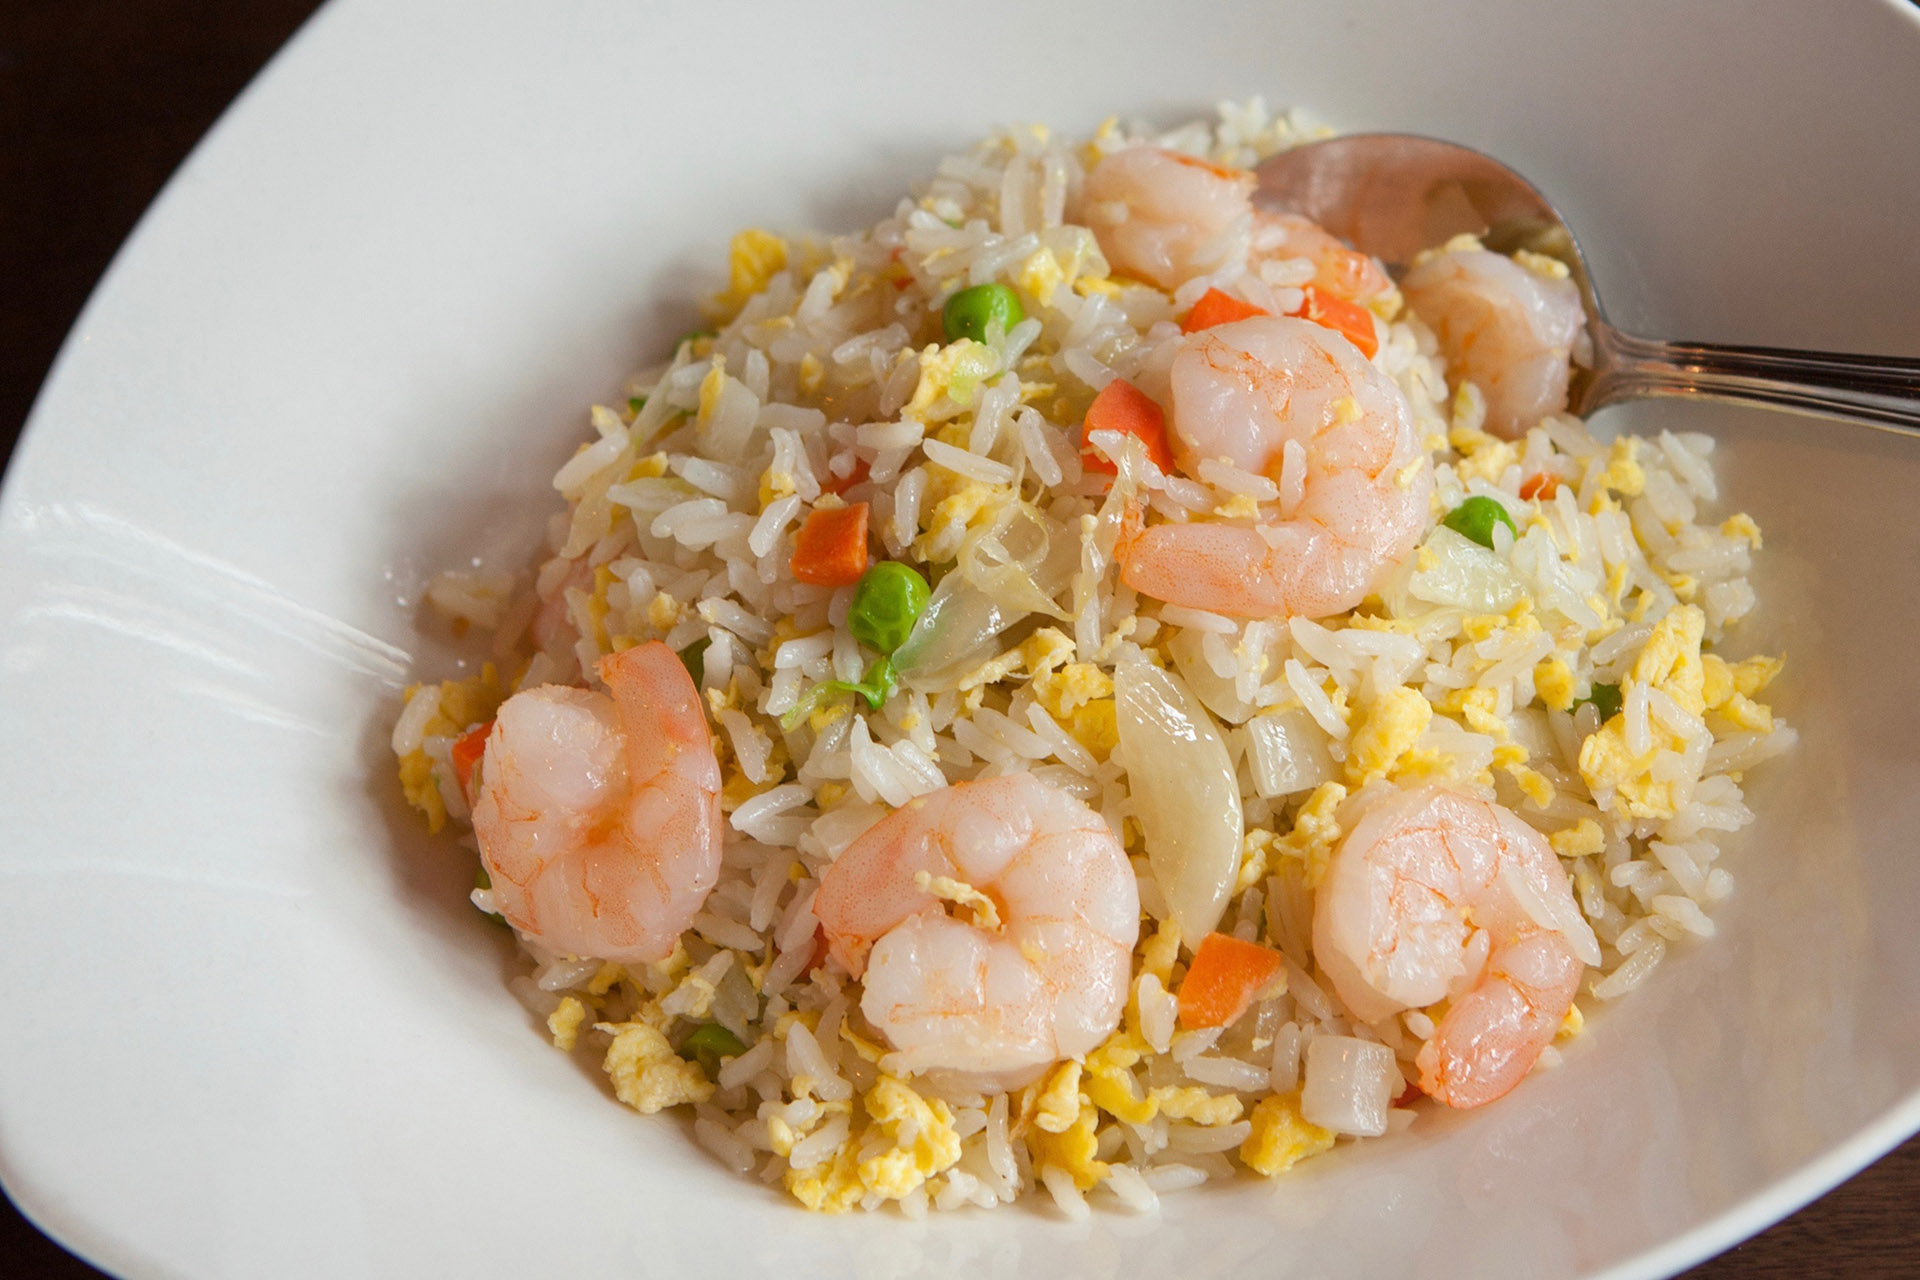 703-shrimp-egg-fried-rice-lee-chen-bistro